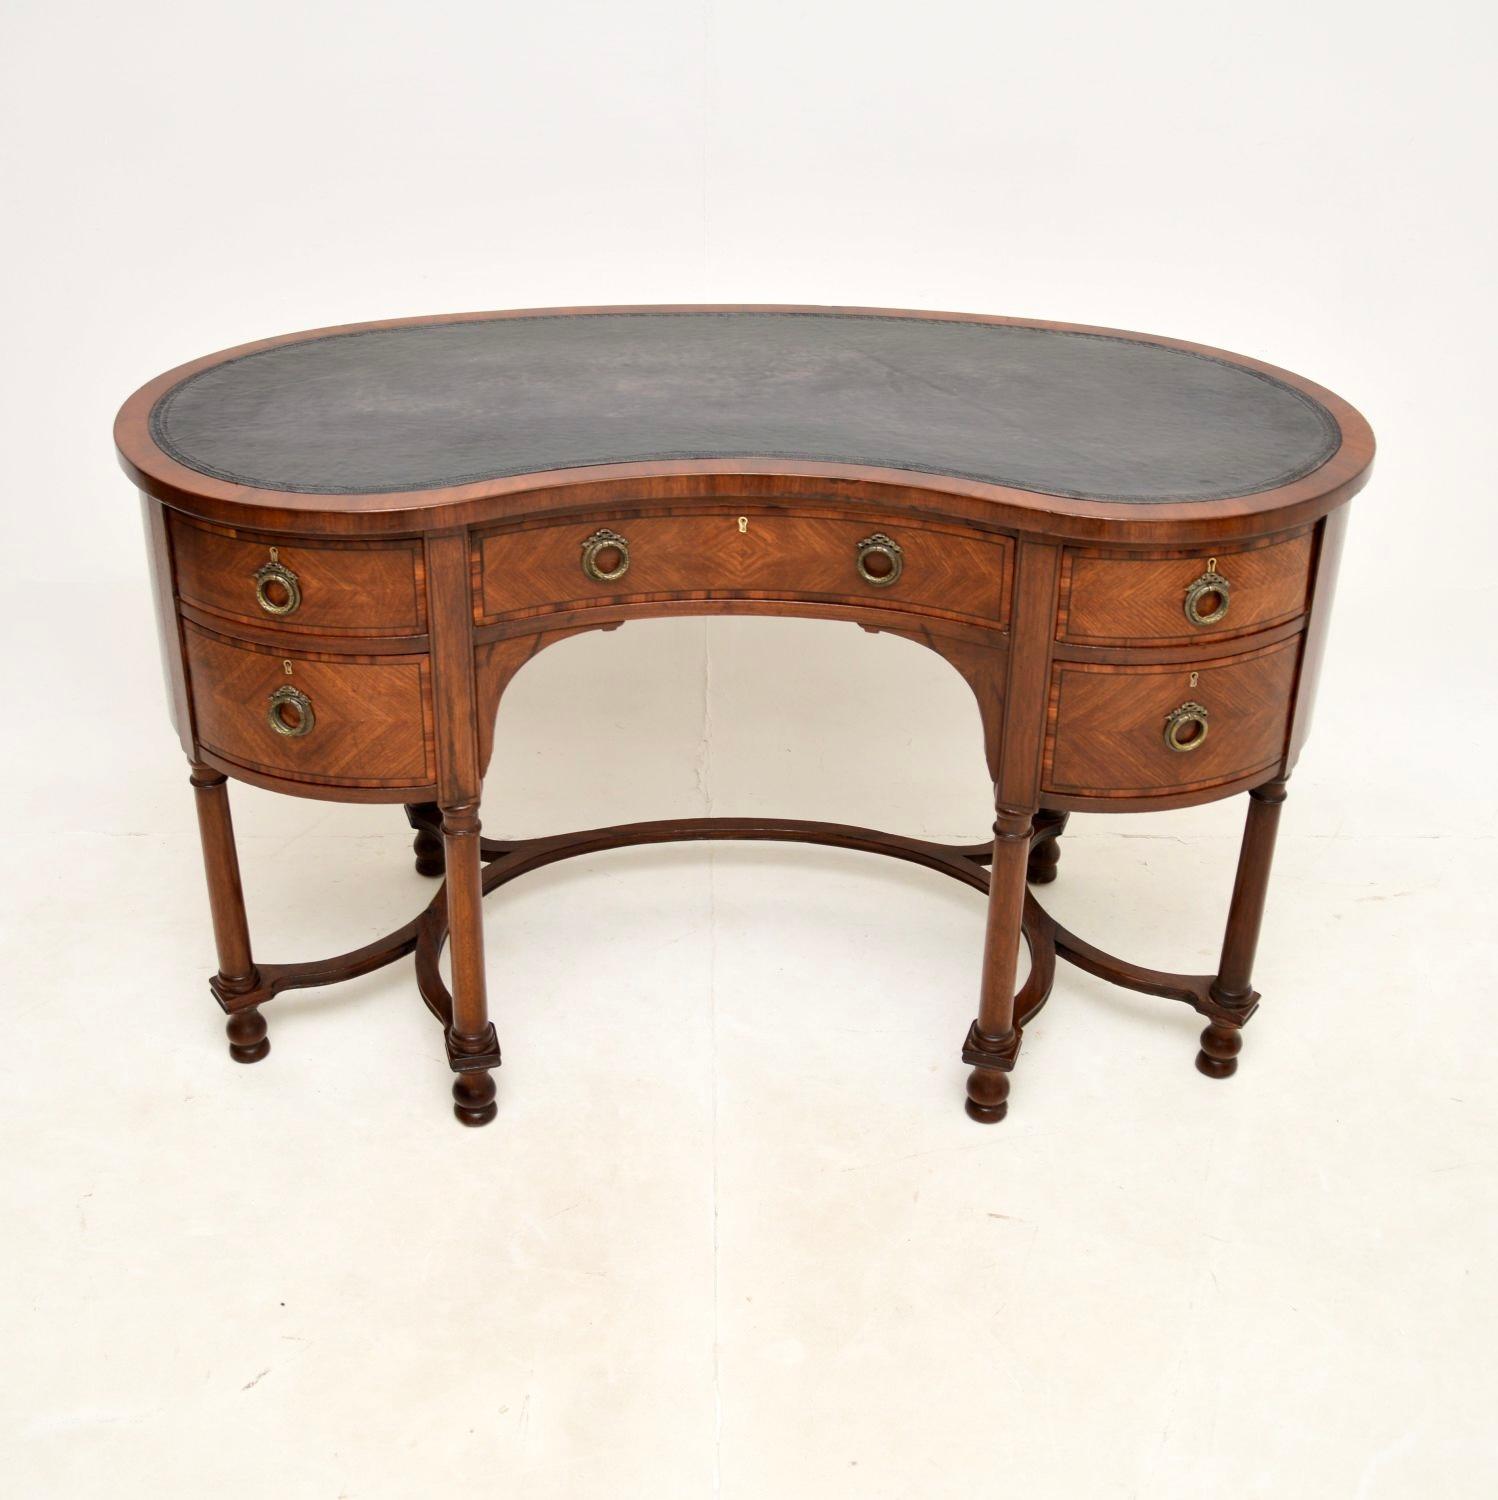 Ein schöner antiker nierenförmiger Schreibtisch. Sie wurde in England hergestellt und stammt aus der Zeit zwischen 1890 und 1910.

In der obersten Schublade befindet sich eine Messingplakette, die aus dem Jahr 1947 stammt, als das Gerät verschenkt